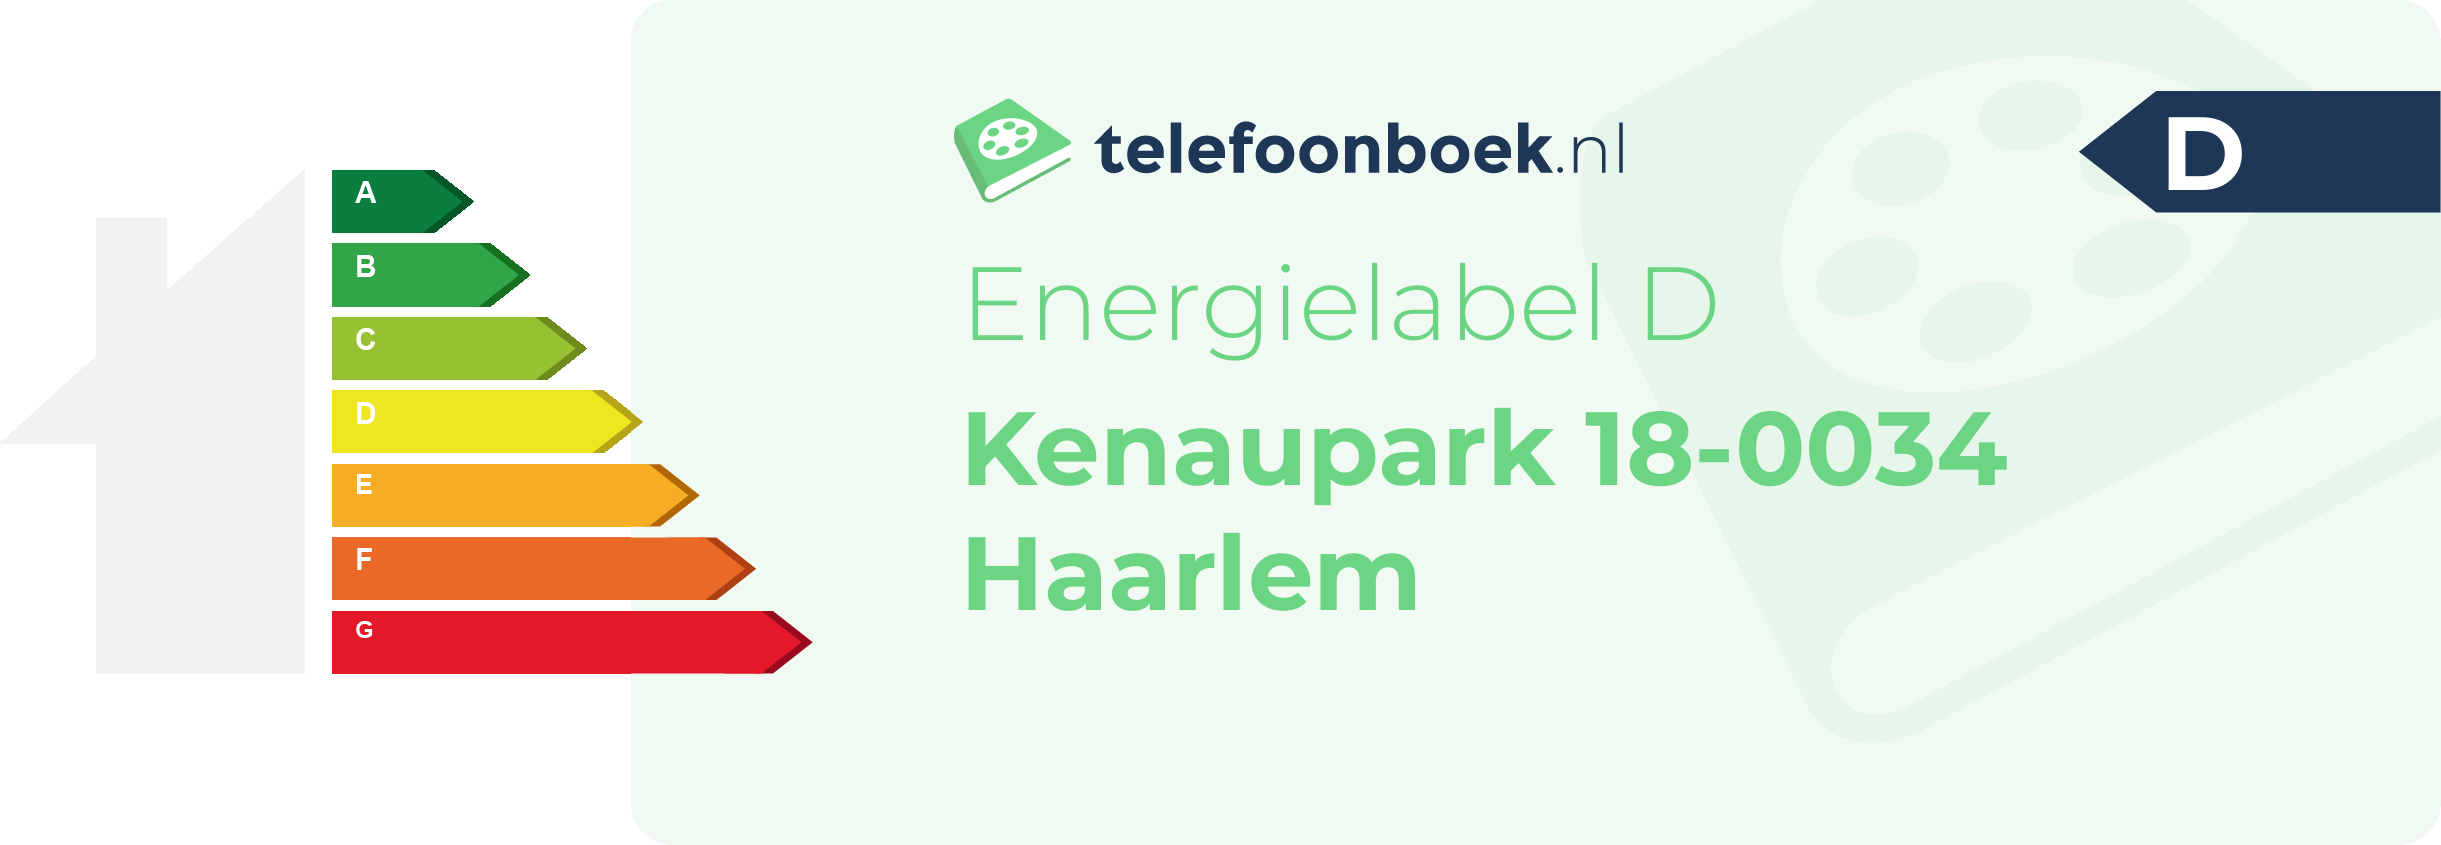 Energielabel Kenaupark 18-0034 Haarlem